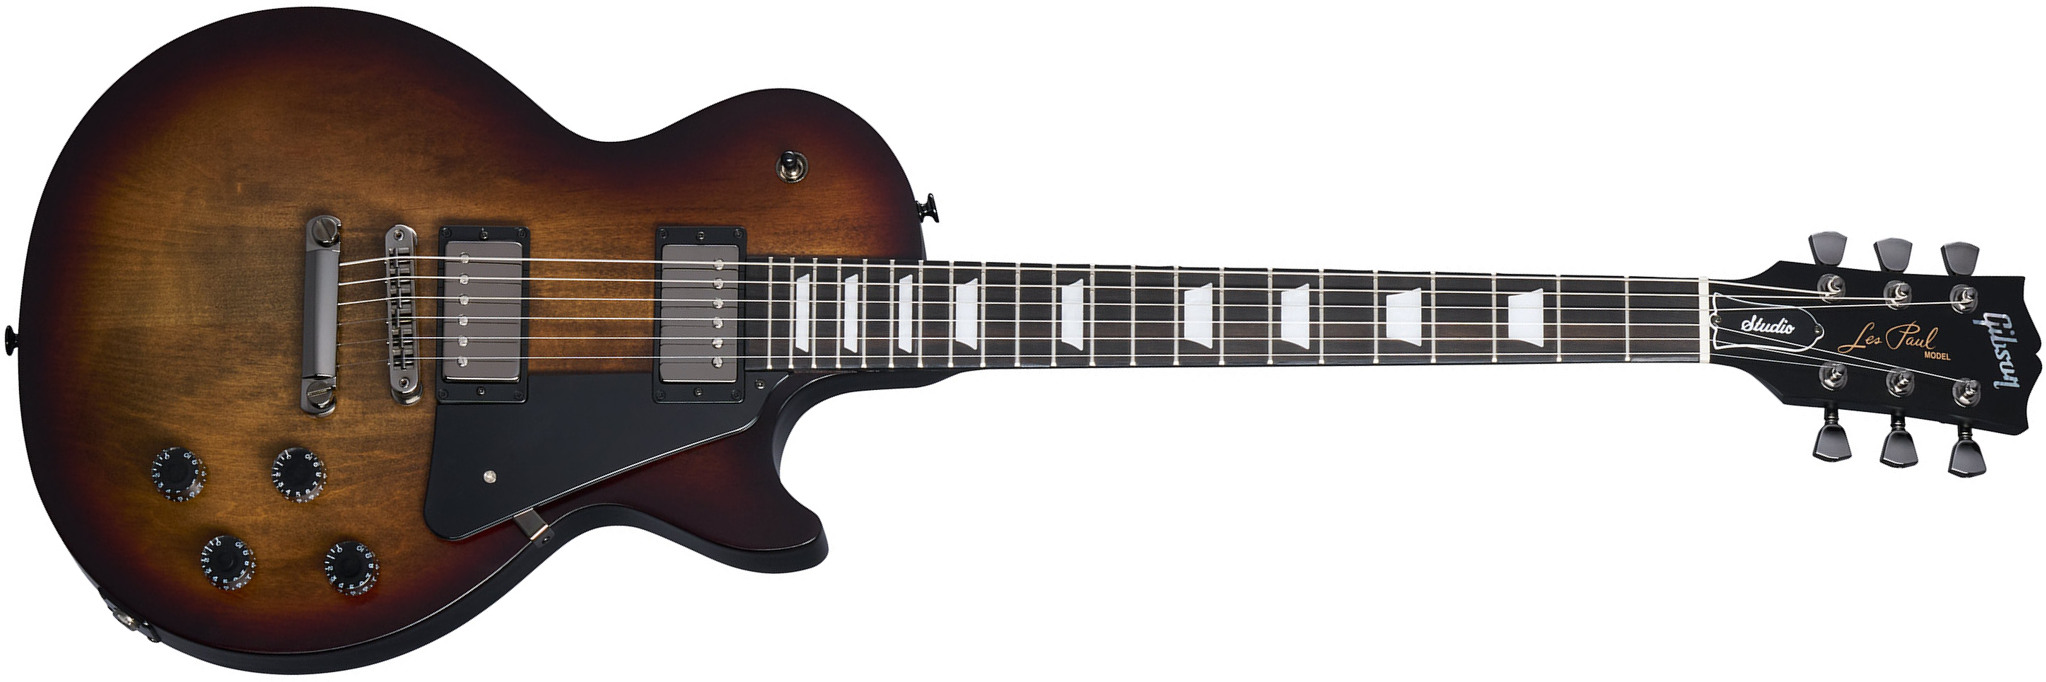 Gibson Les Paul Modern Studio Usa 2h Ht Eb - Smokehouse Satin - Guitarra eléctrica de corte único. - Main picture